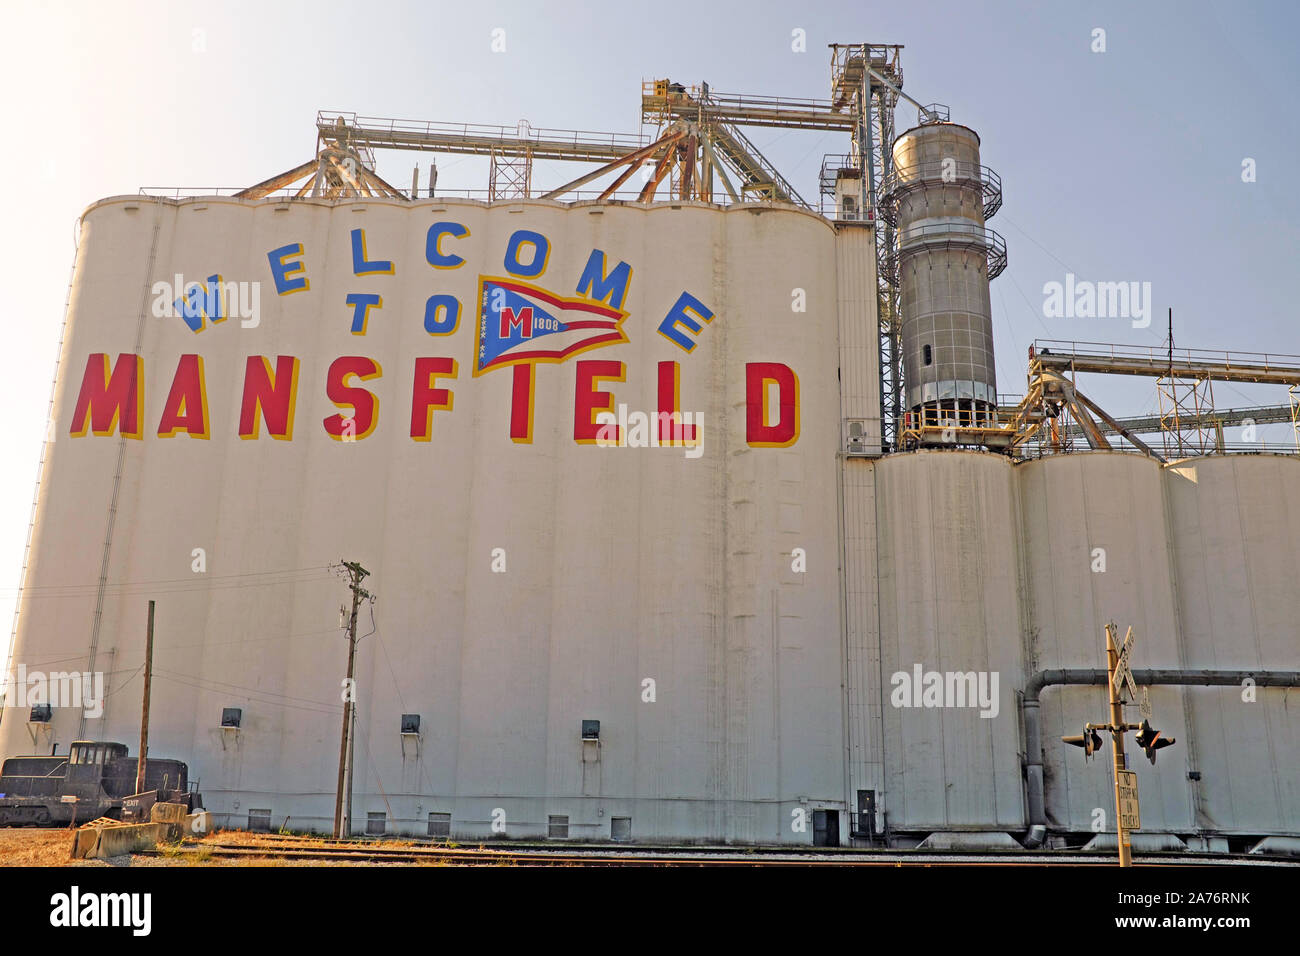 Willkommen in Mansfield, gemalt an der Seite der Centerra Co-Op-Getreideaufzüge in der North Main Street in Mansfield, Ohio, USA. Stockfoto